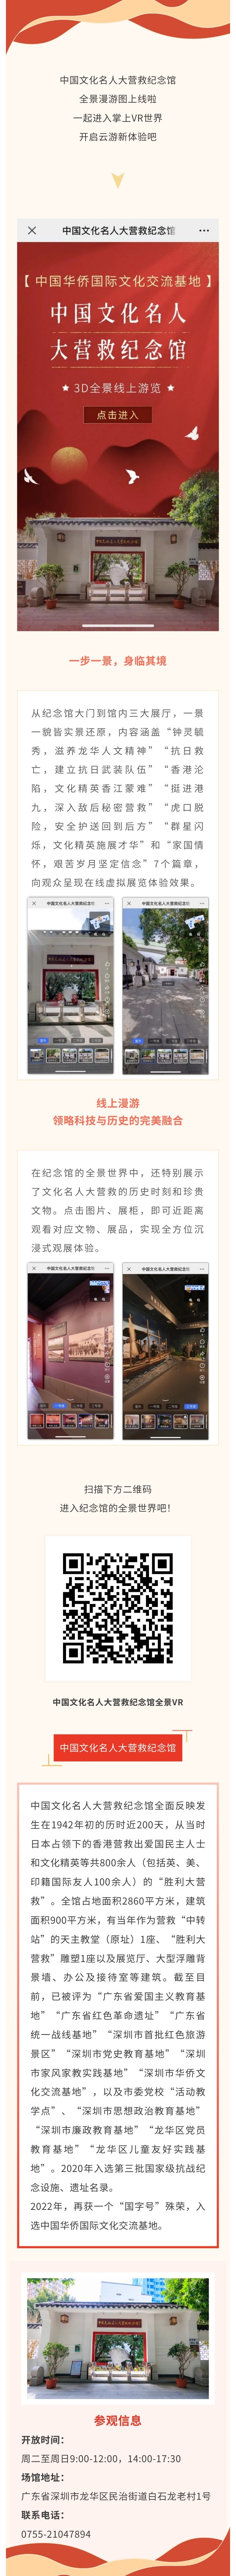 云游新体验！掌上VR世界，沉浸式游览中国文化名人大营救纪念馆